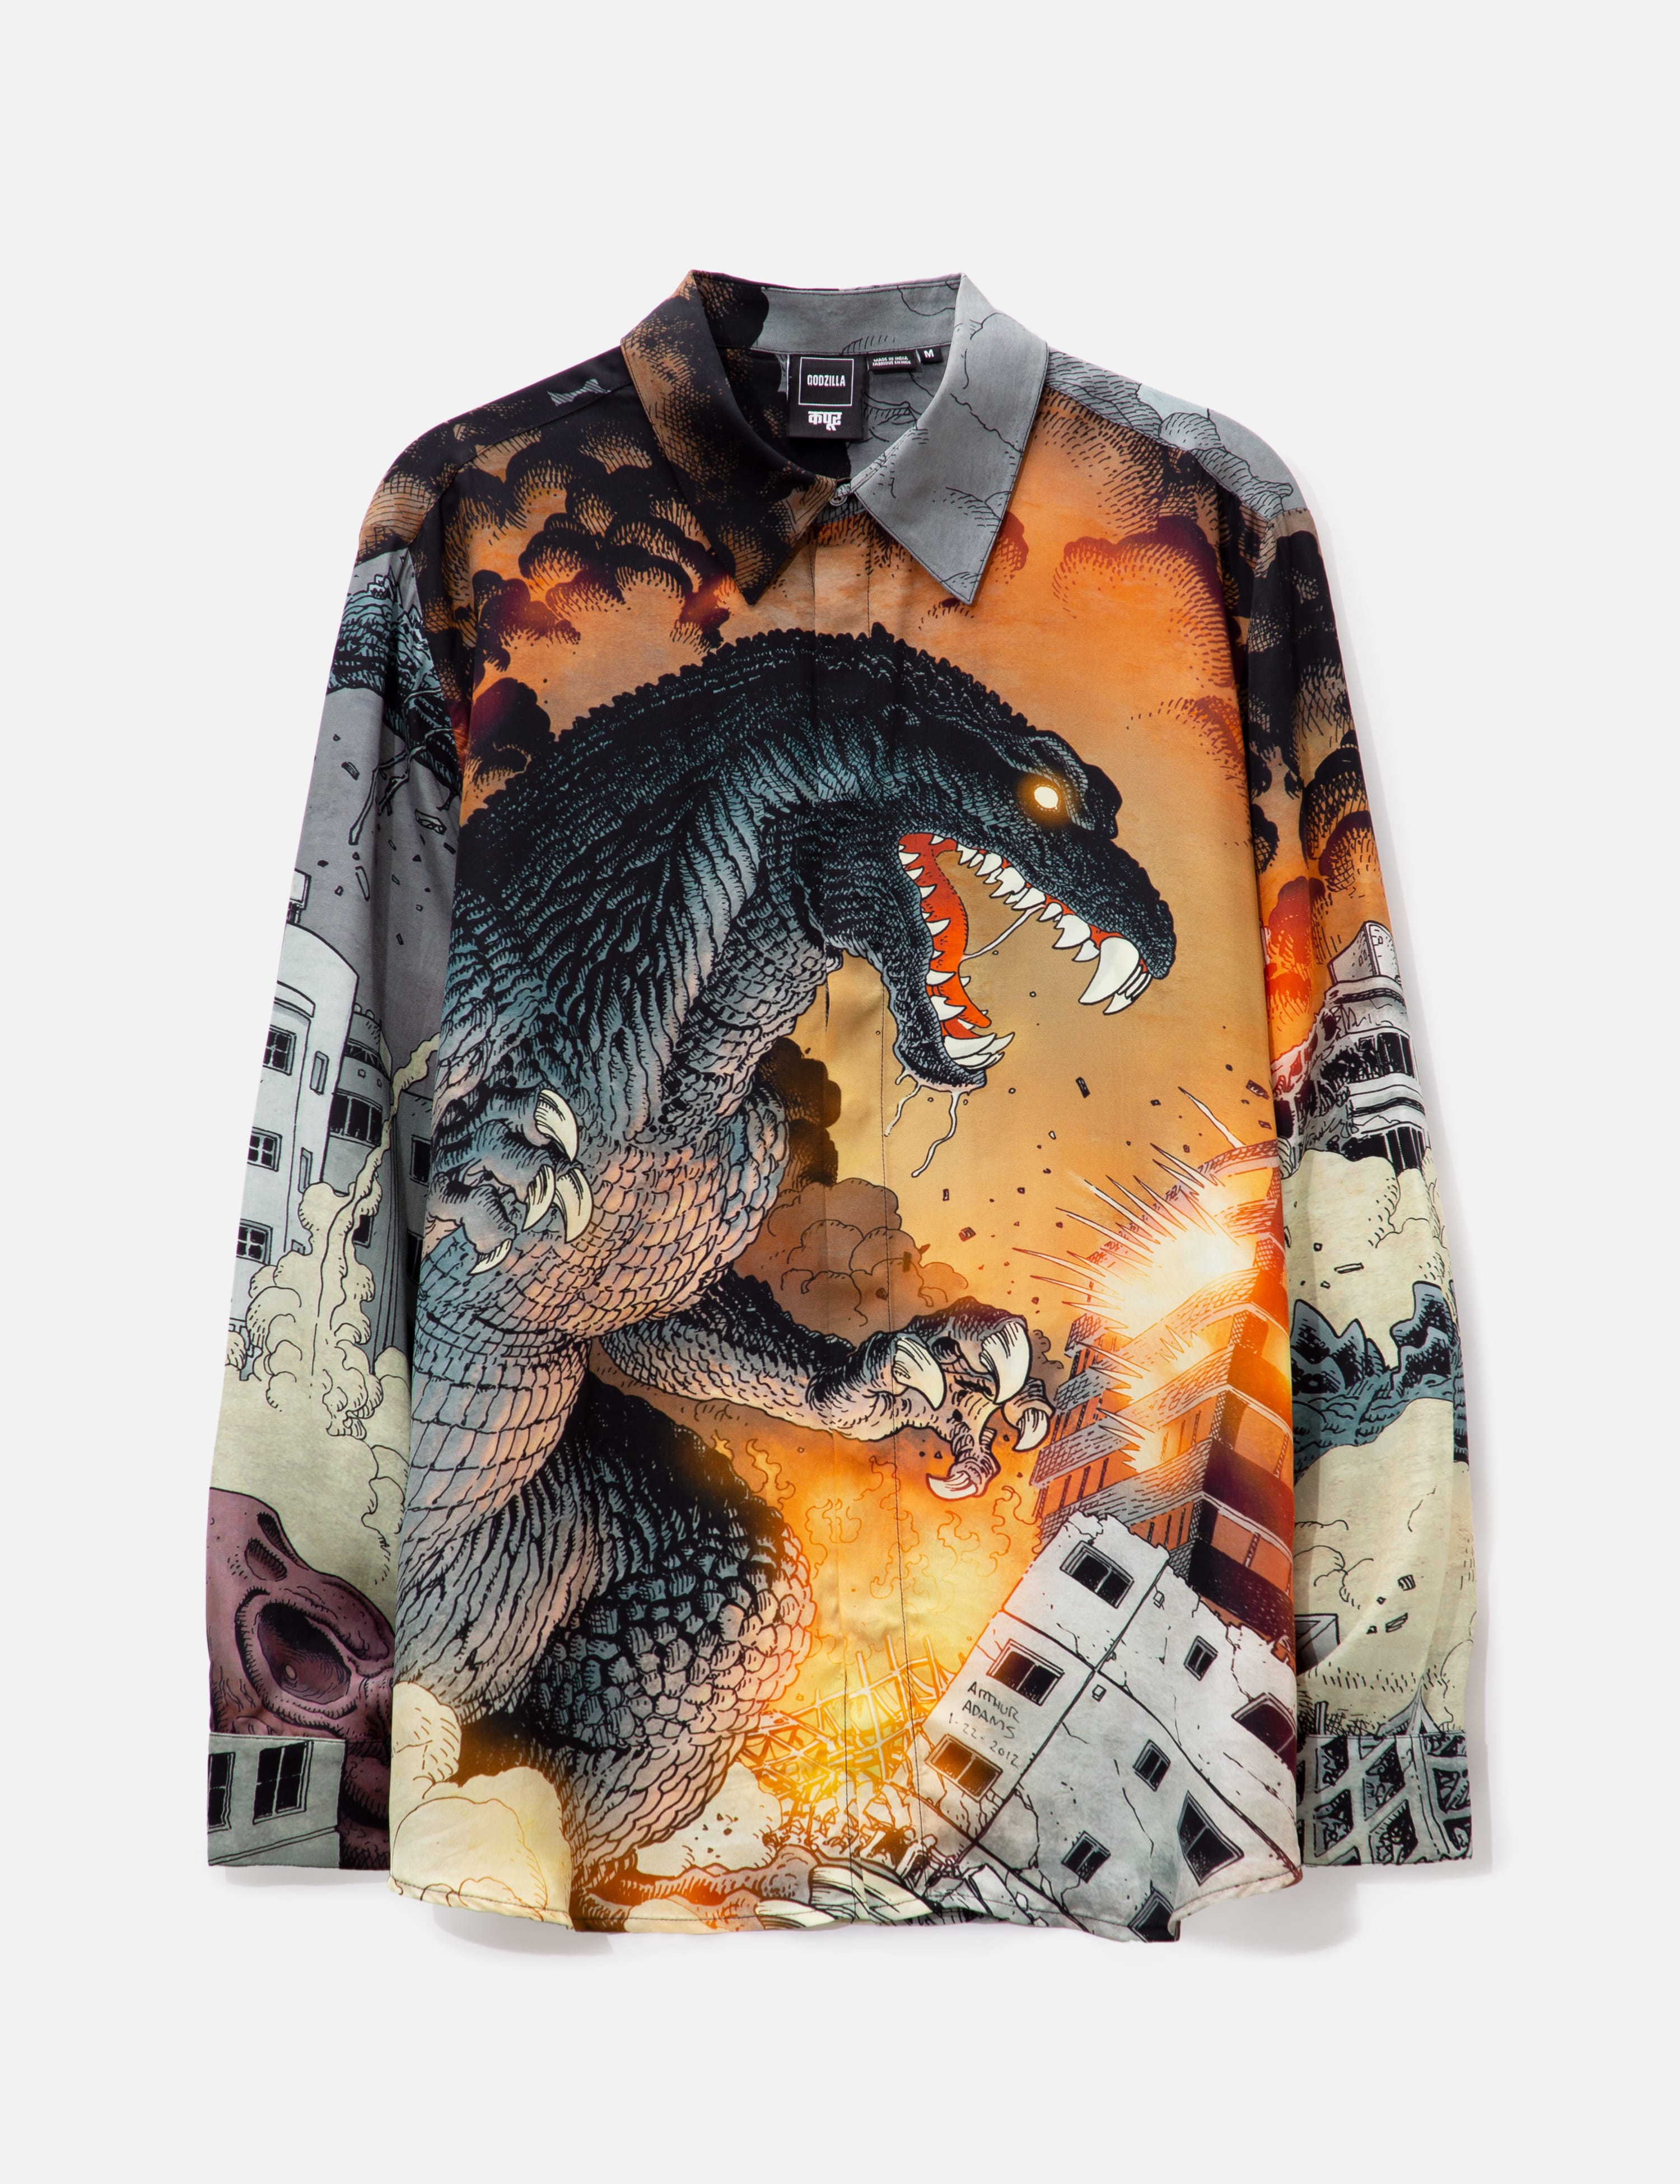 Godzilla X Dhruv Kapoor Engineered Shirt